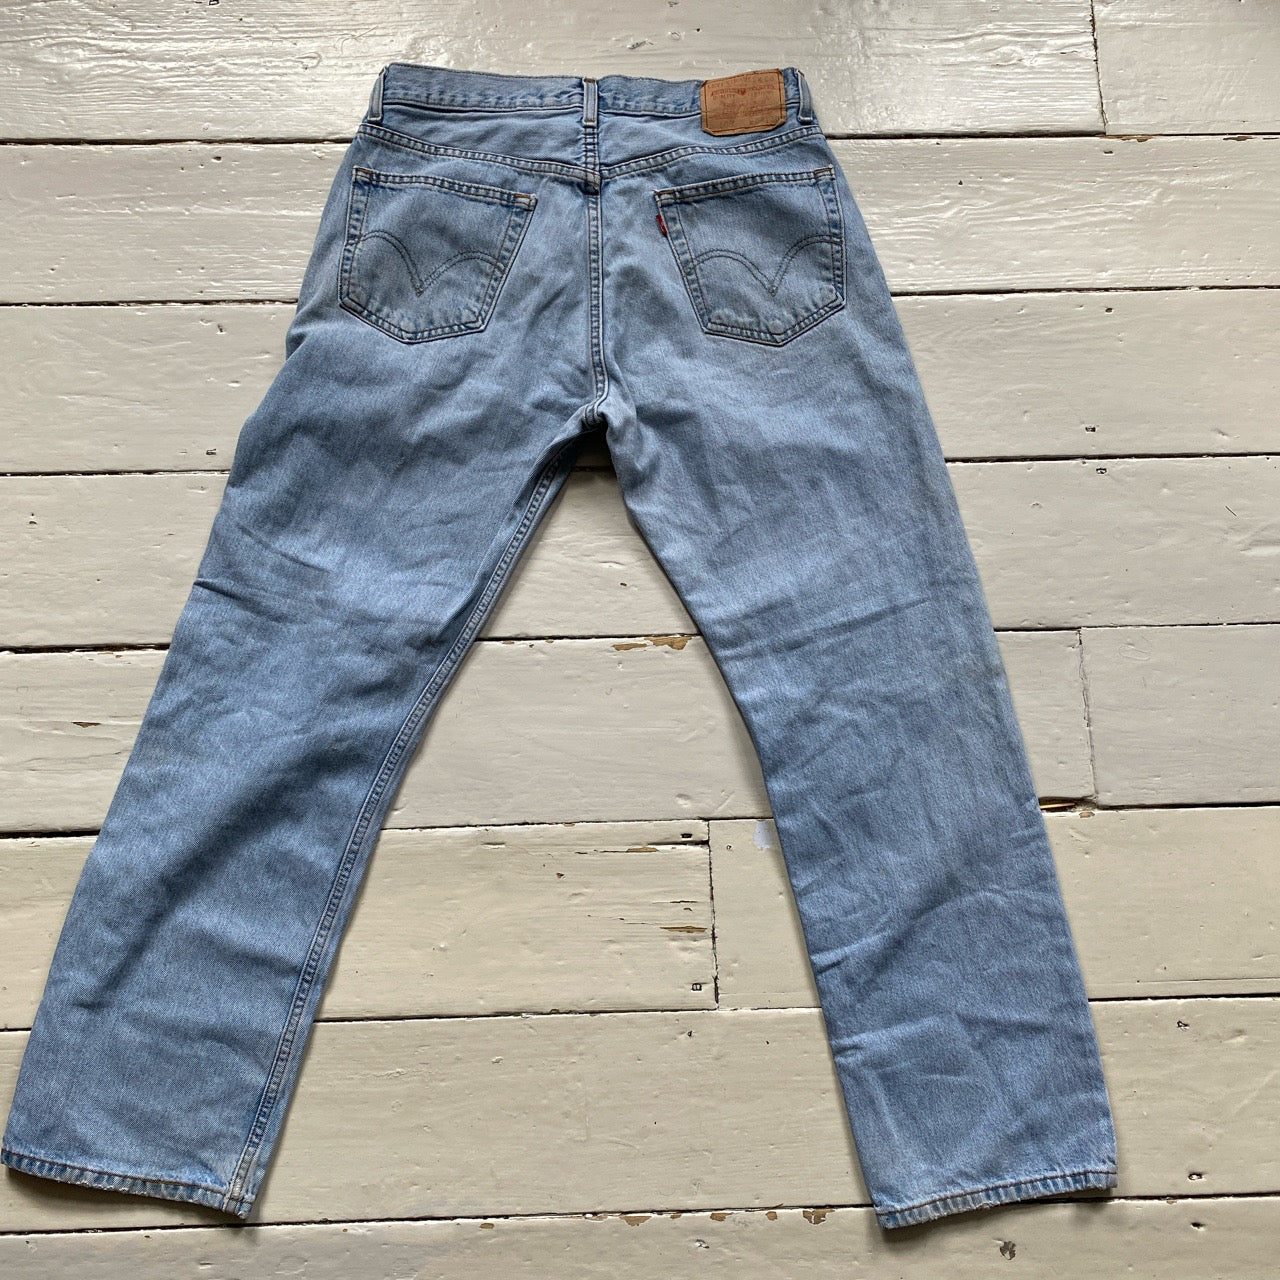 Levis 505 Light Blue Jeans (34/30)